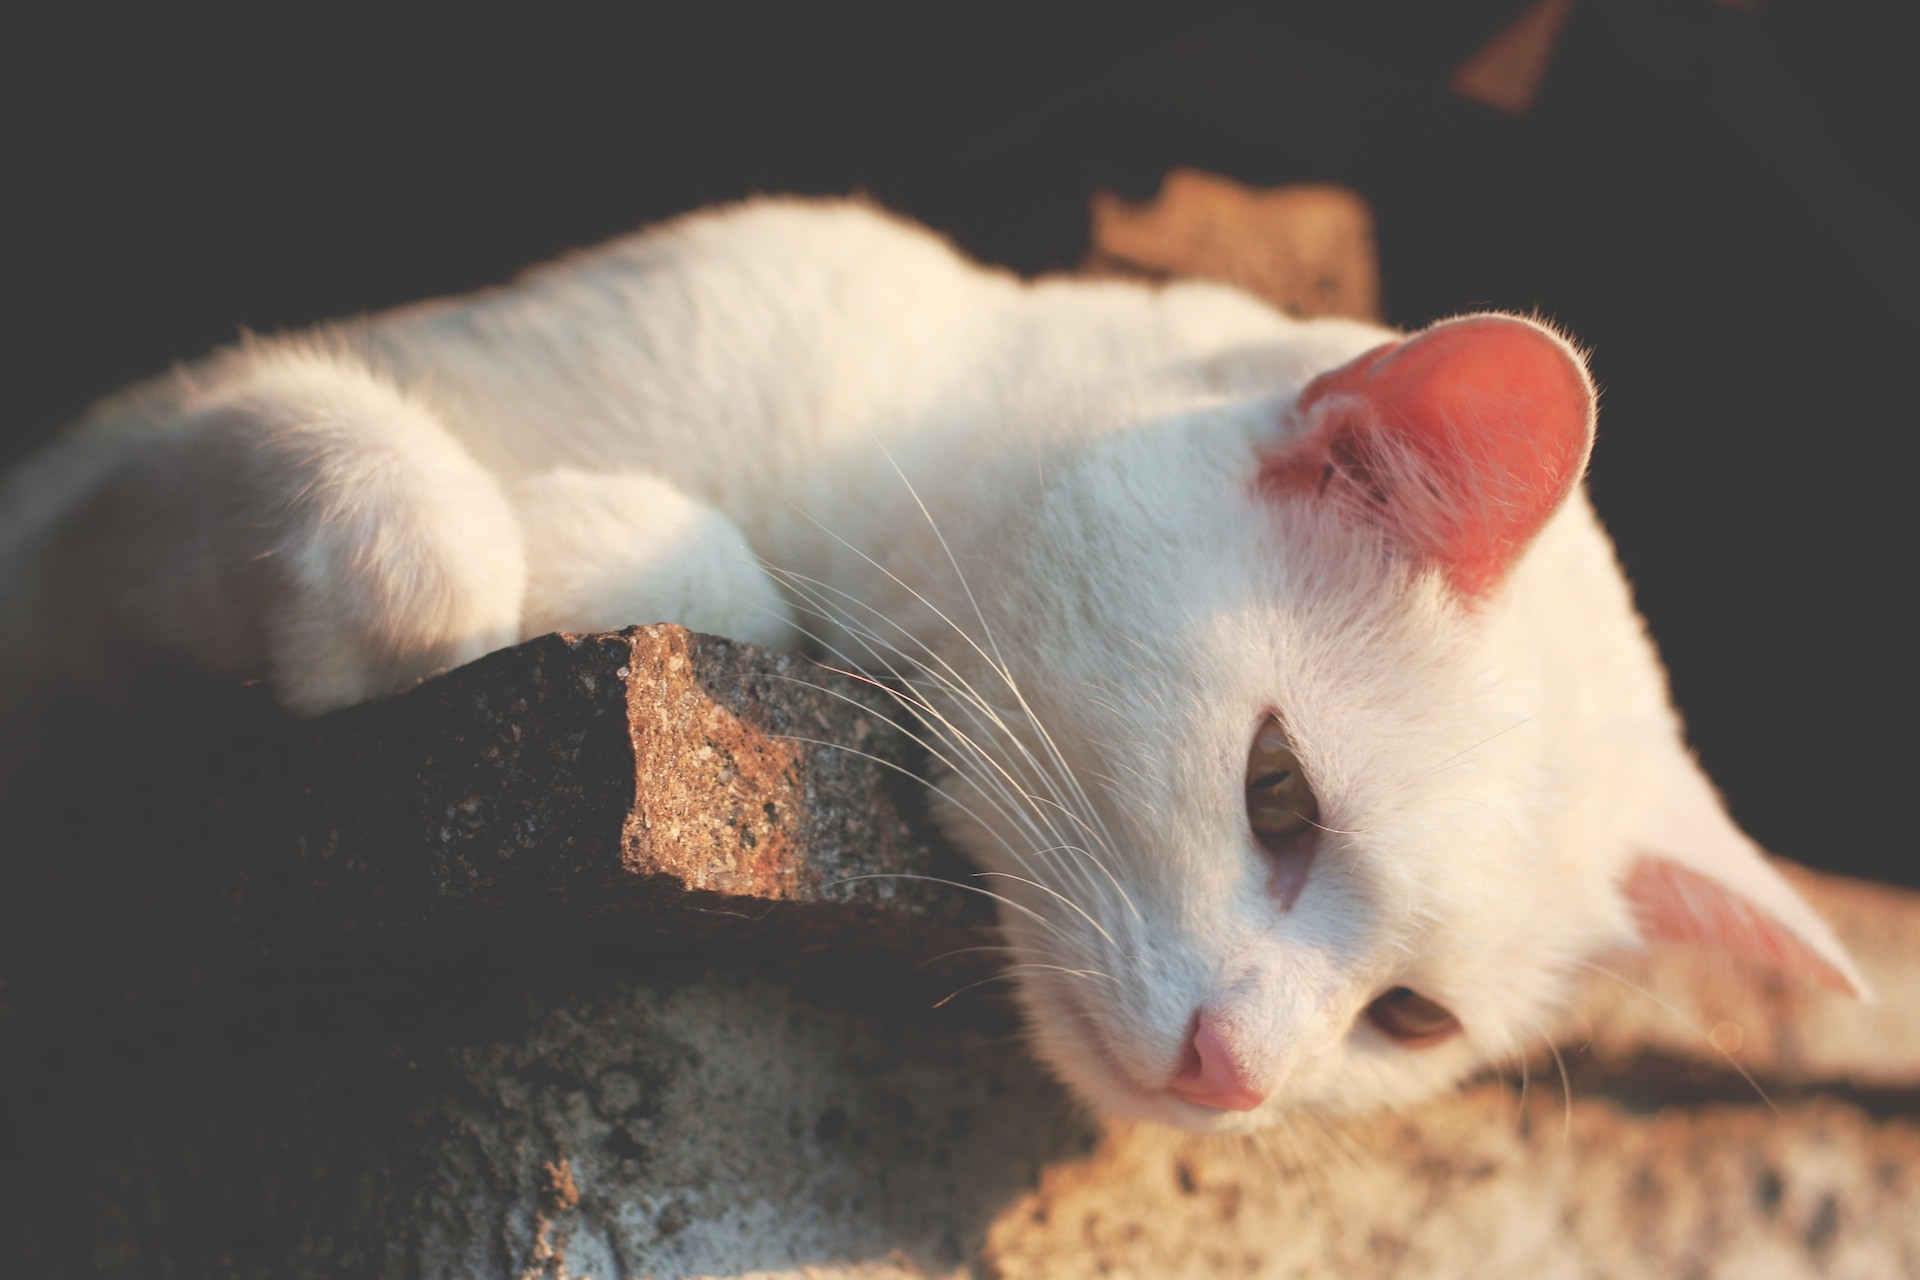 white tabby cat